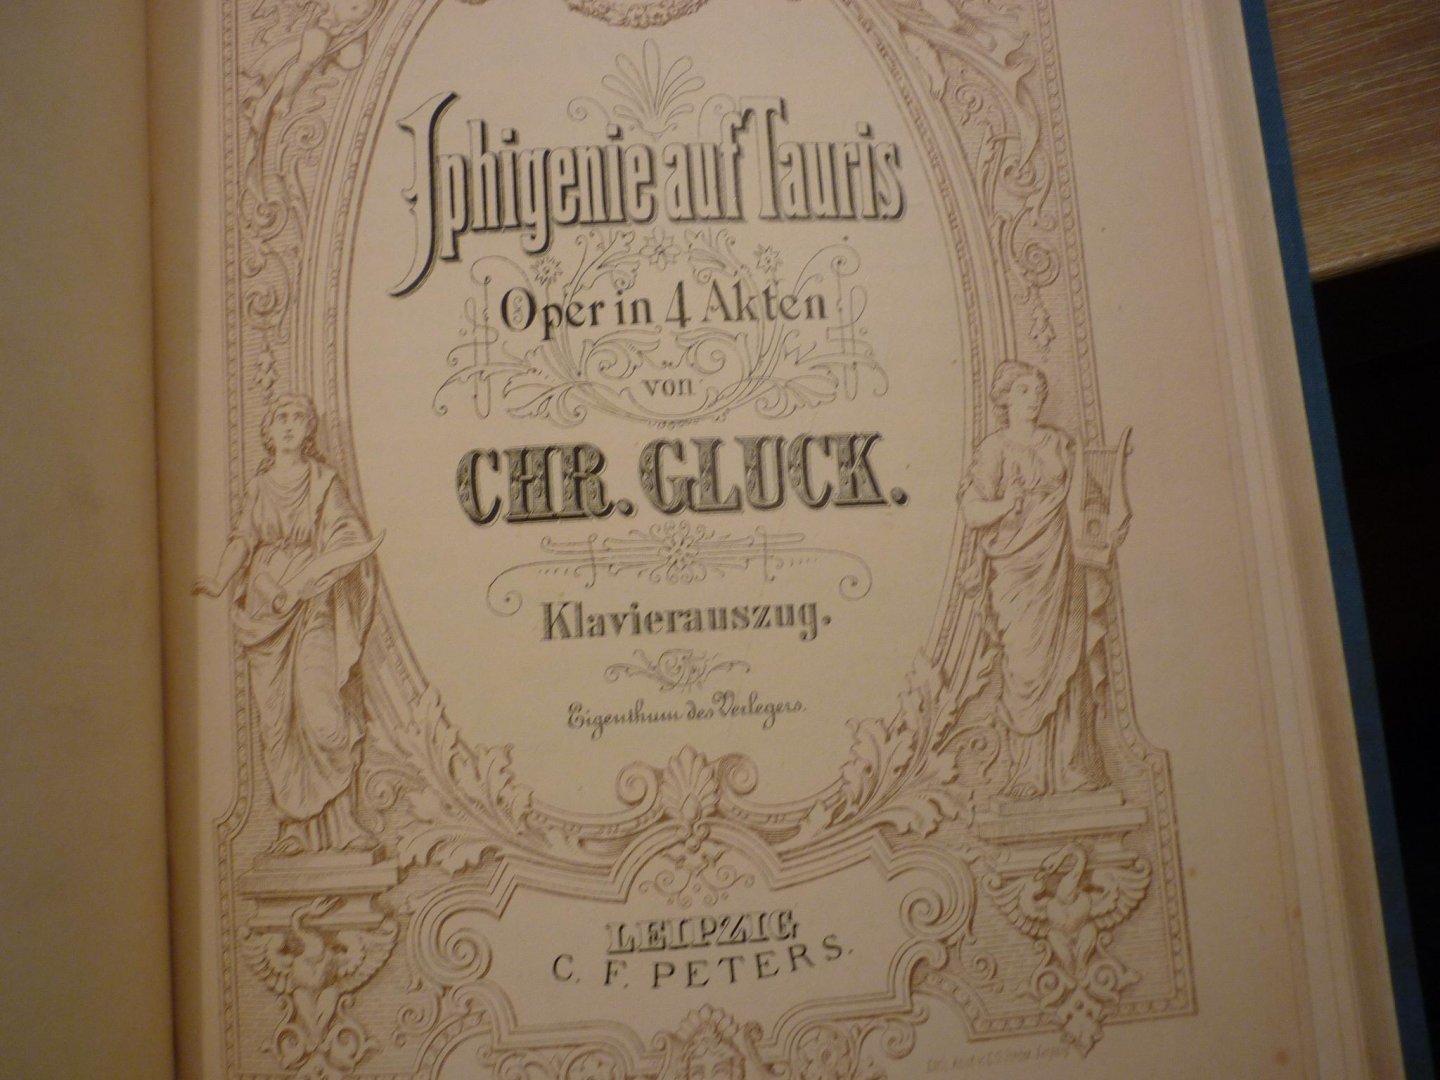 Gluck; Christoph Willibald (1714–1787) - Orpheus; Oper in 3 Akten  //  Iphigenie in Aulis; Oper in 3 Akten  //  Iphigenie auf Tauris; Oper in 4 Akten